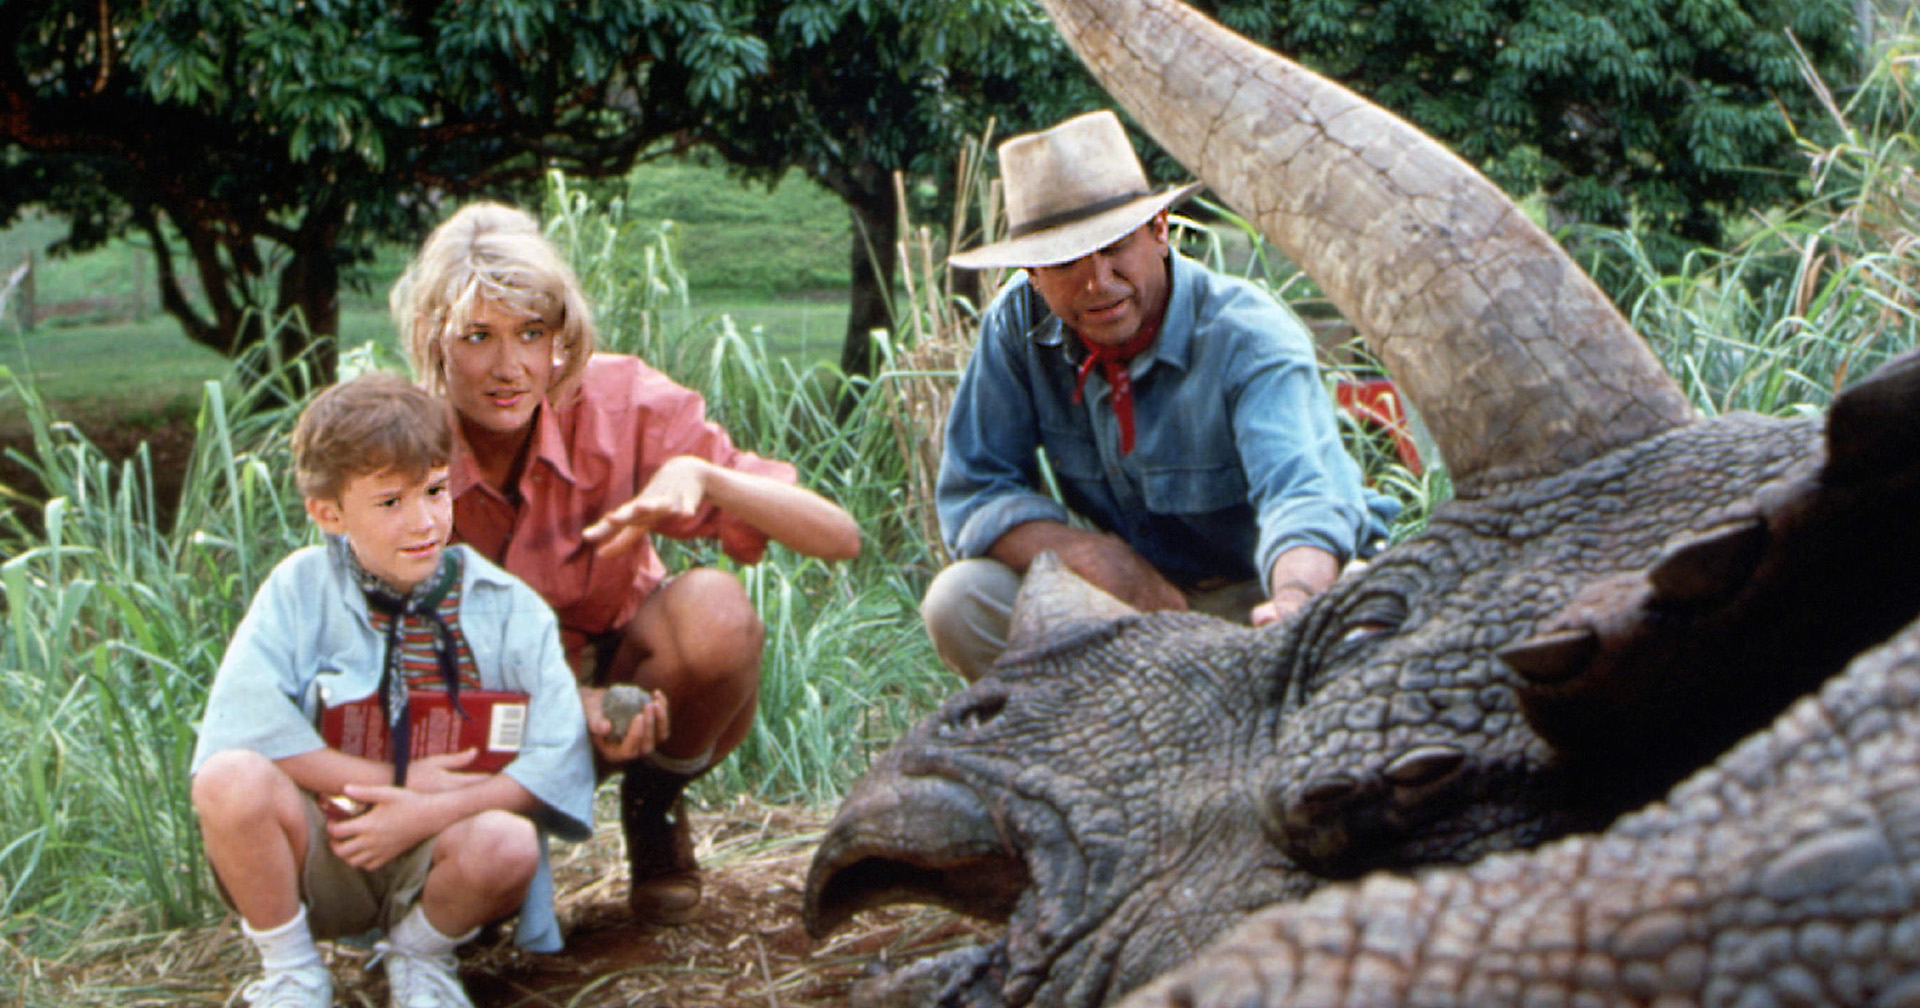 หุ้นส่วน อีลอน มัสก์ กล่าว : สามารถสร้าง Jurassic Park ขึ้นมาจริง ๆ ได้